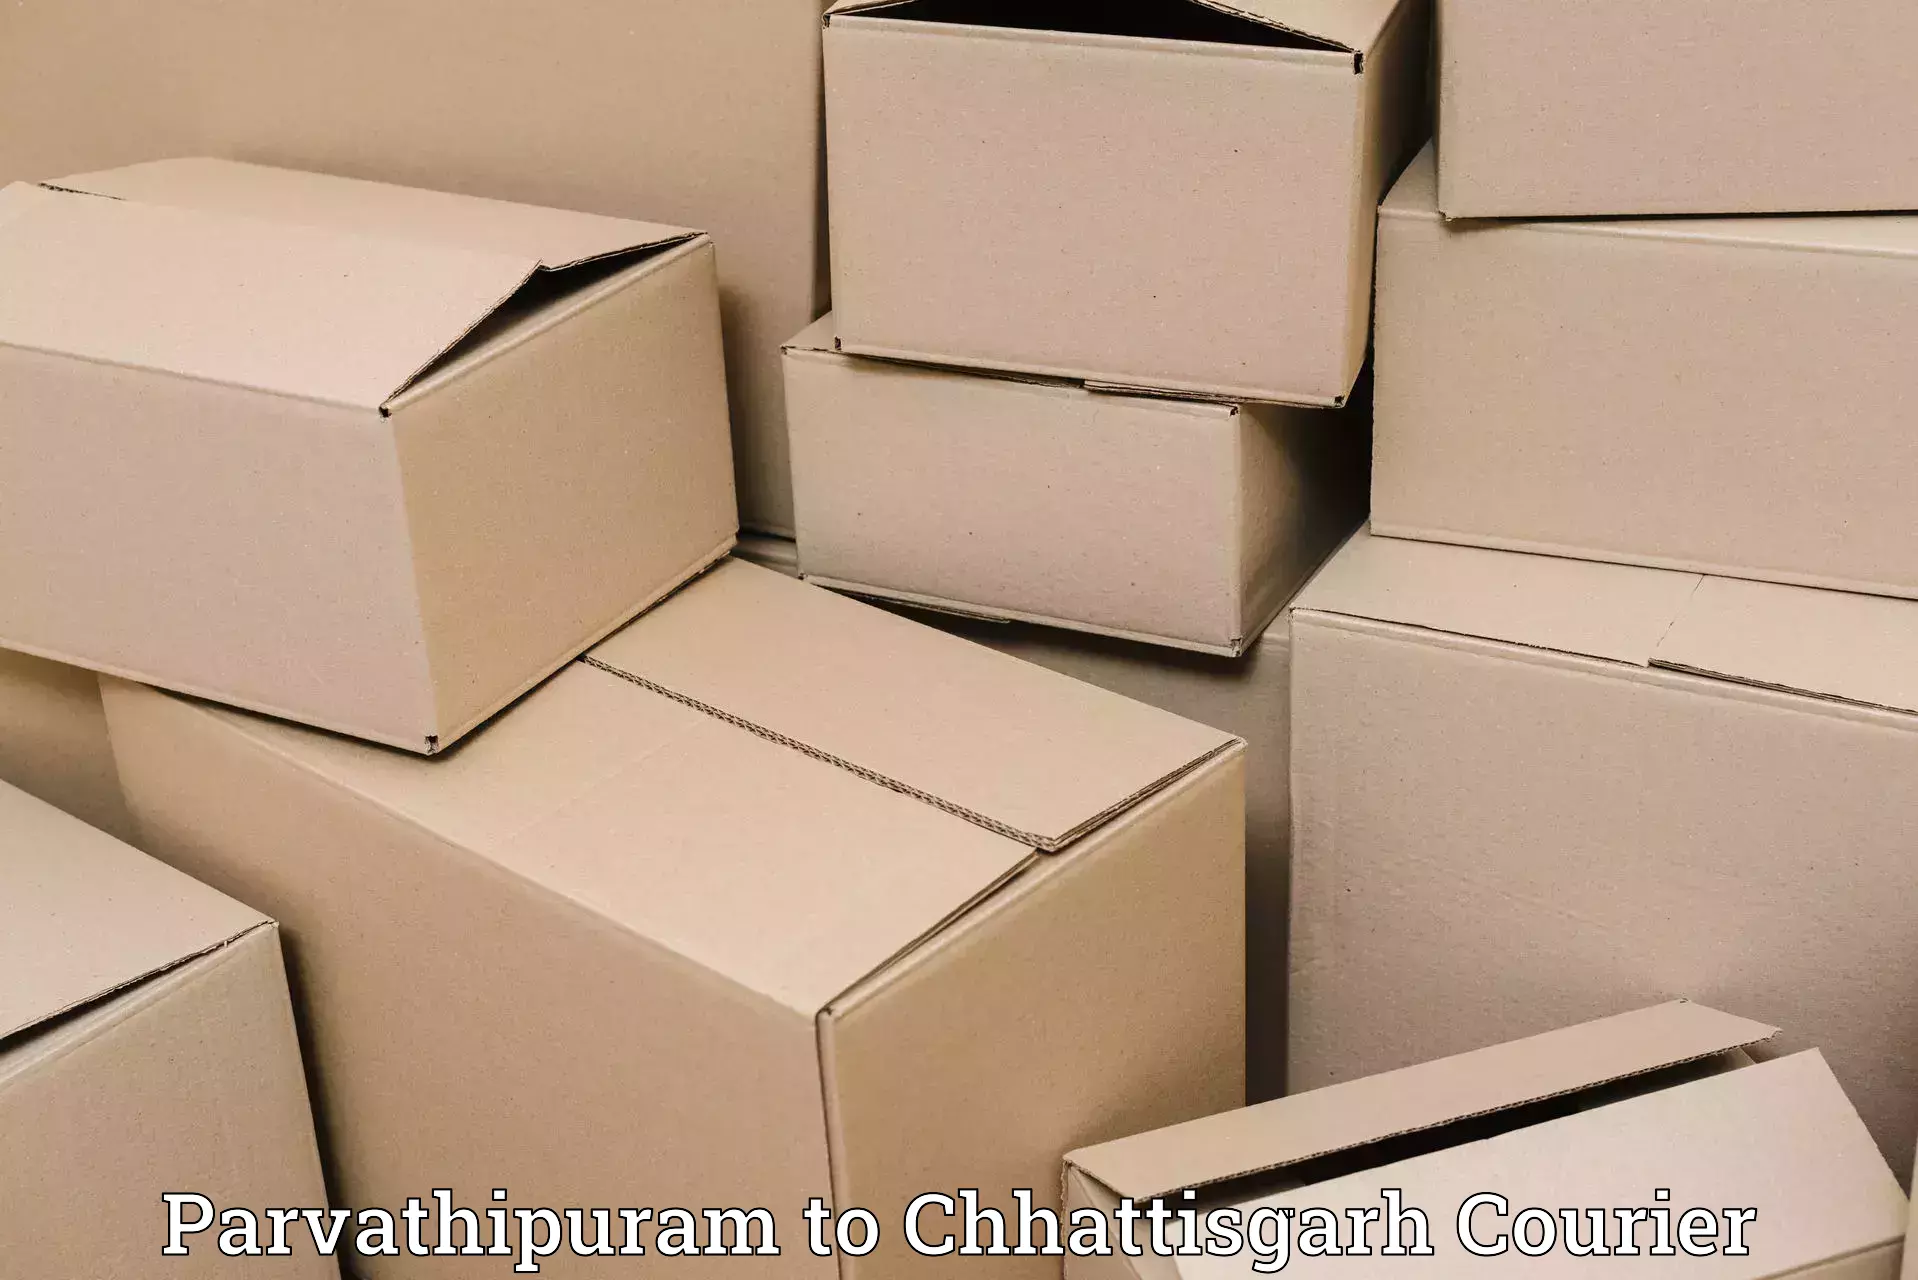 Digital shipping tools in Parvathipuram to Kondagaon